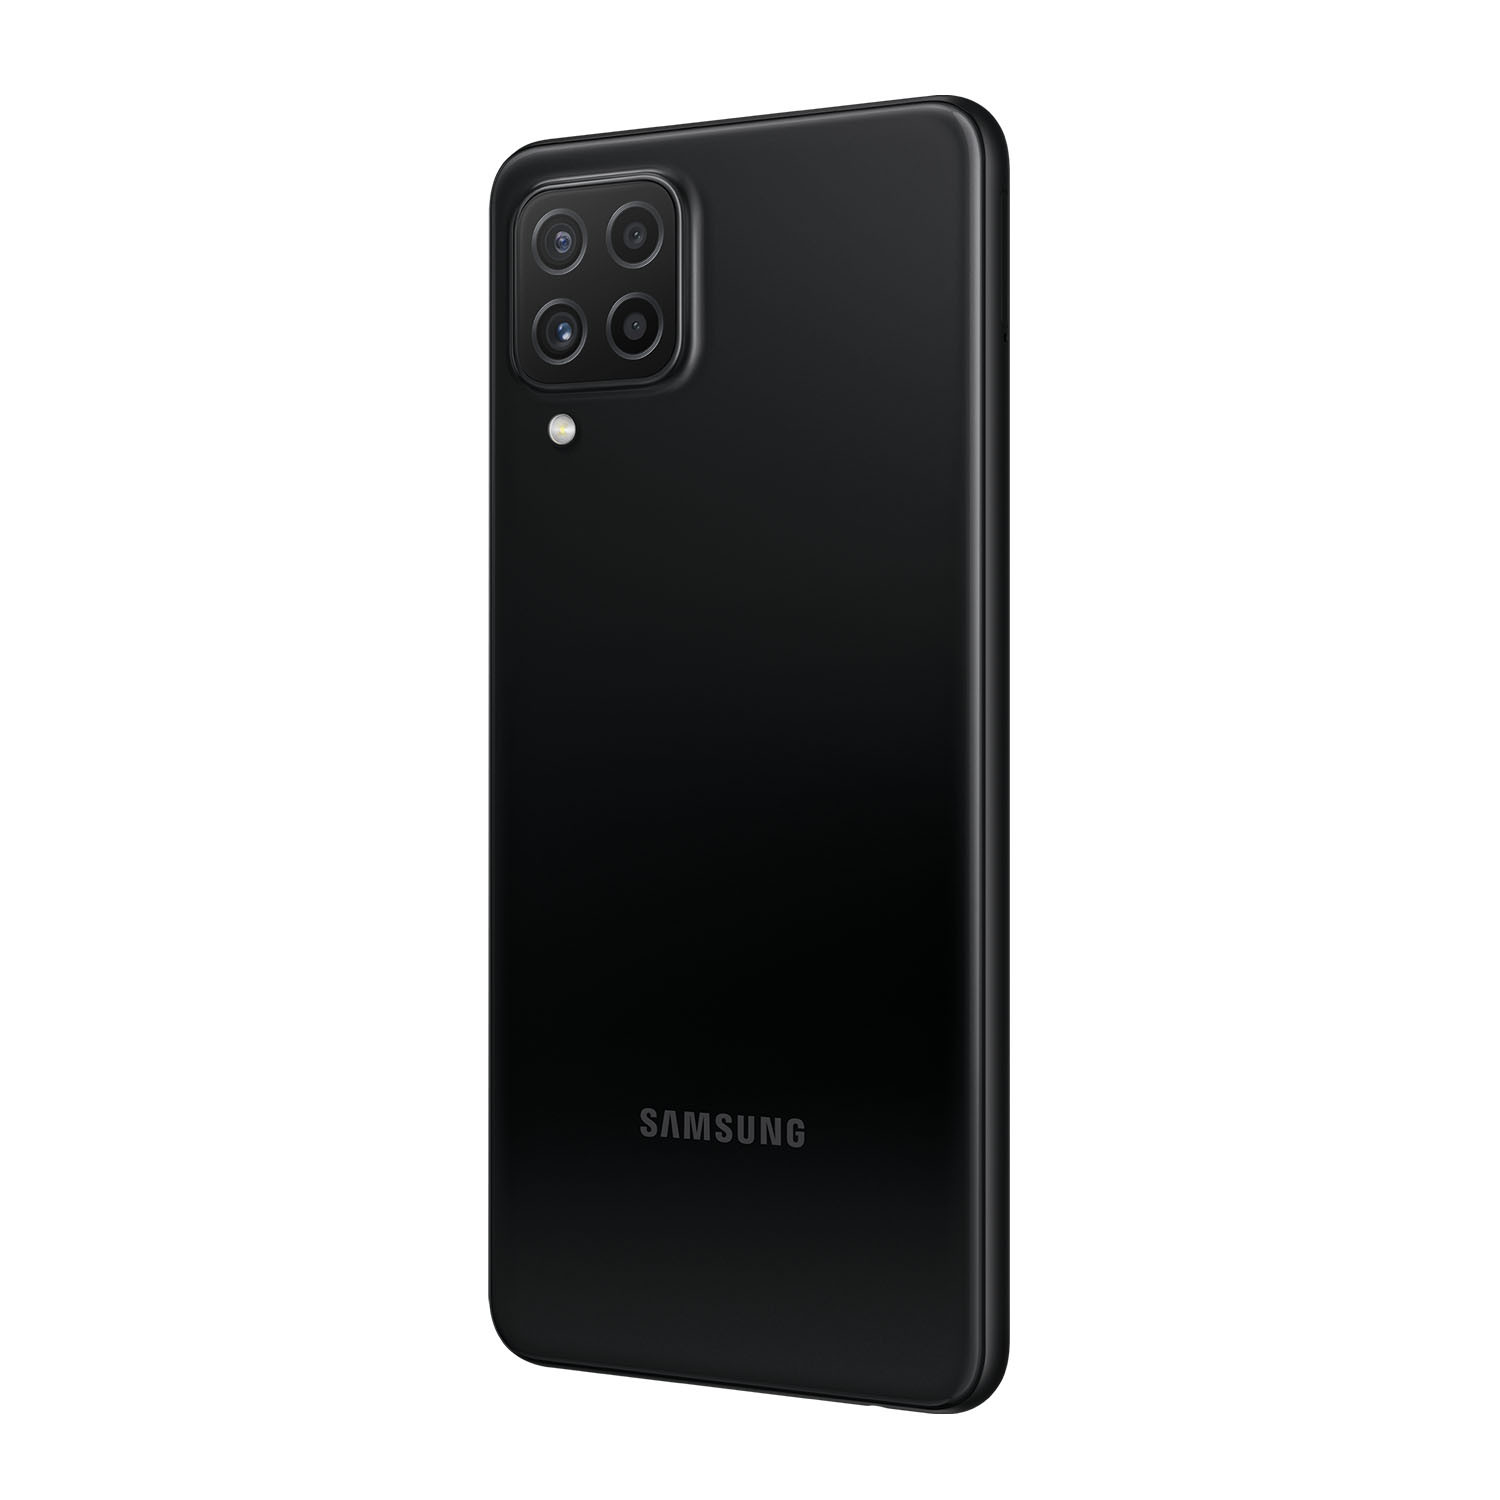 گوشی موبایل سامسونگ مدل Galaxy A22 ظرفیت 64 گیگابایت با 4 گیگابایت رم